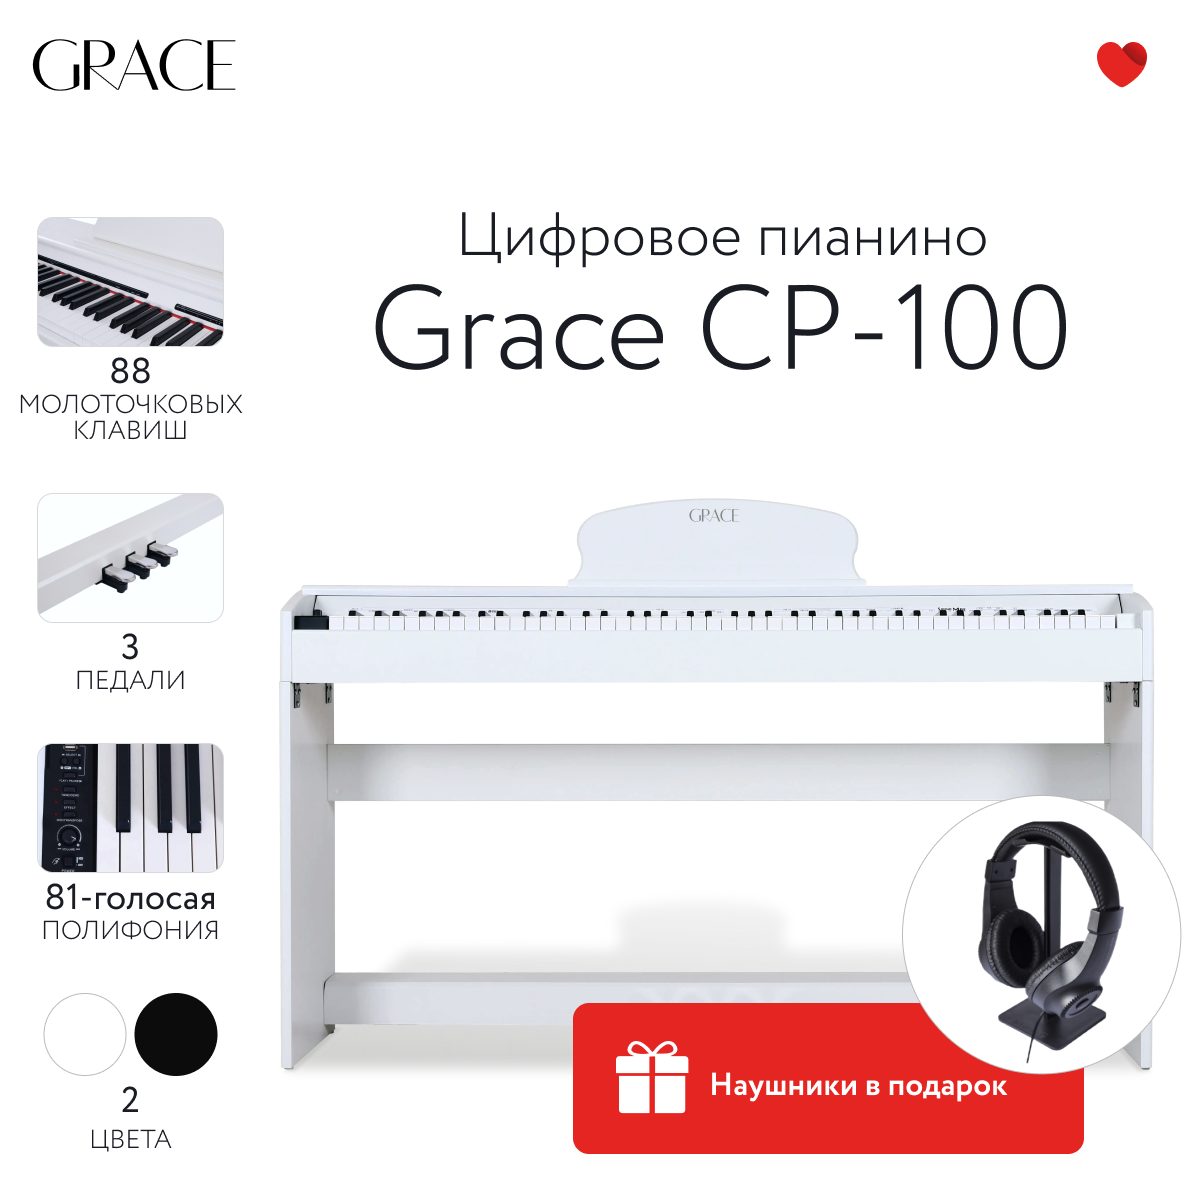 Grace CP-100